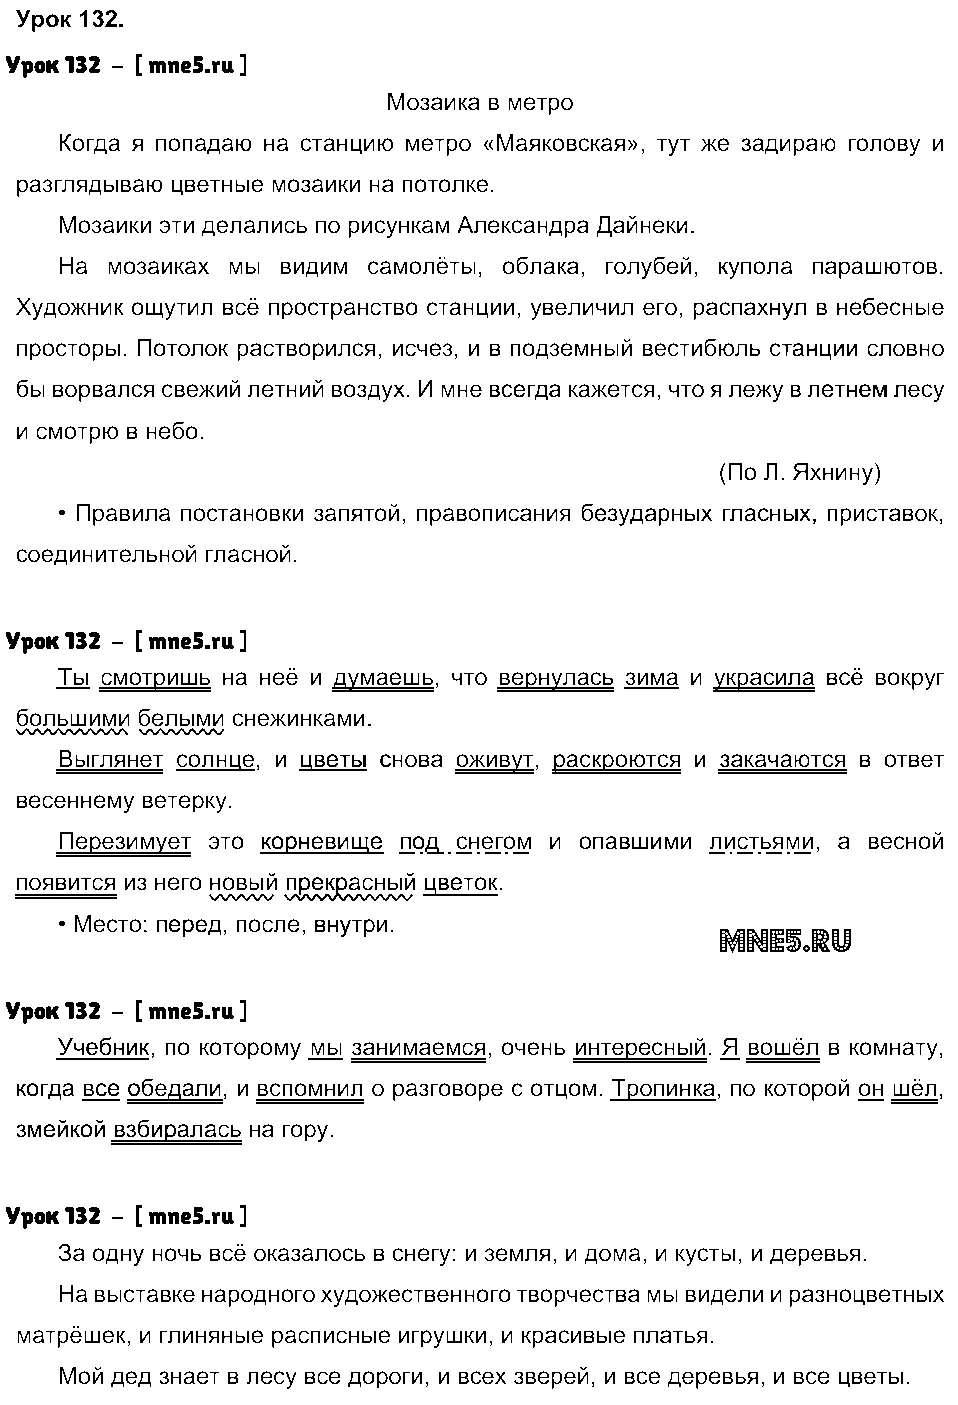 ГДЗ Русский язык 4 класс - Урок 132